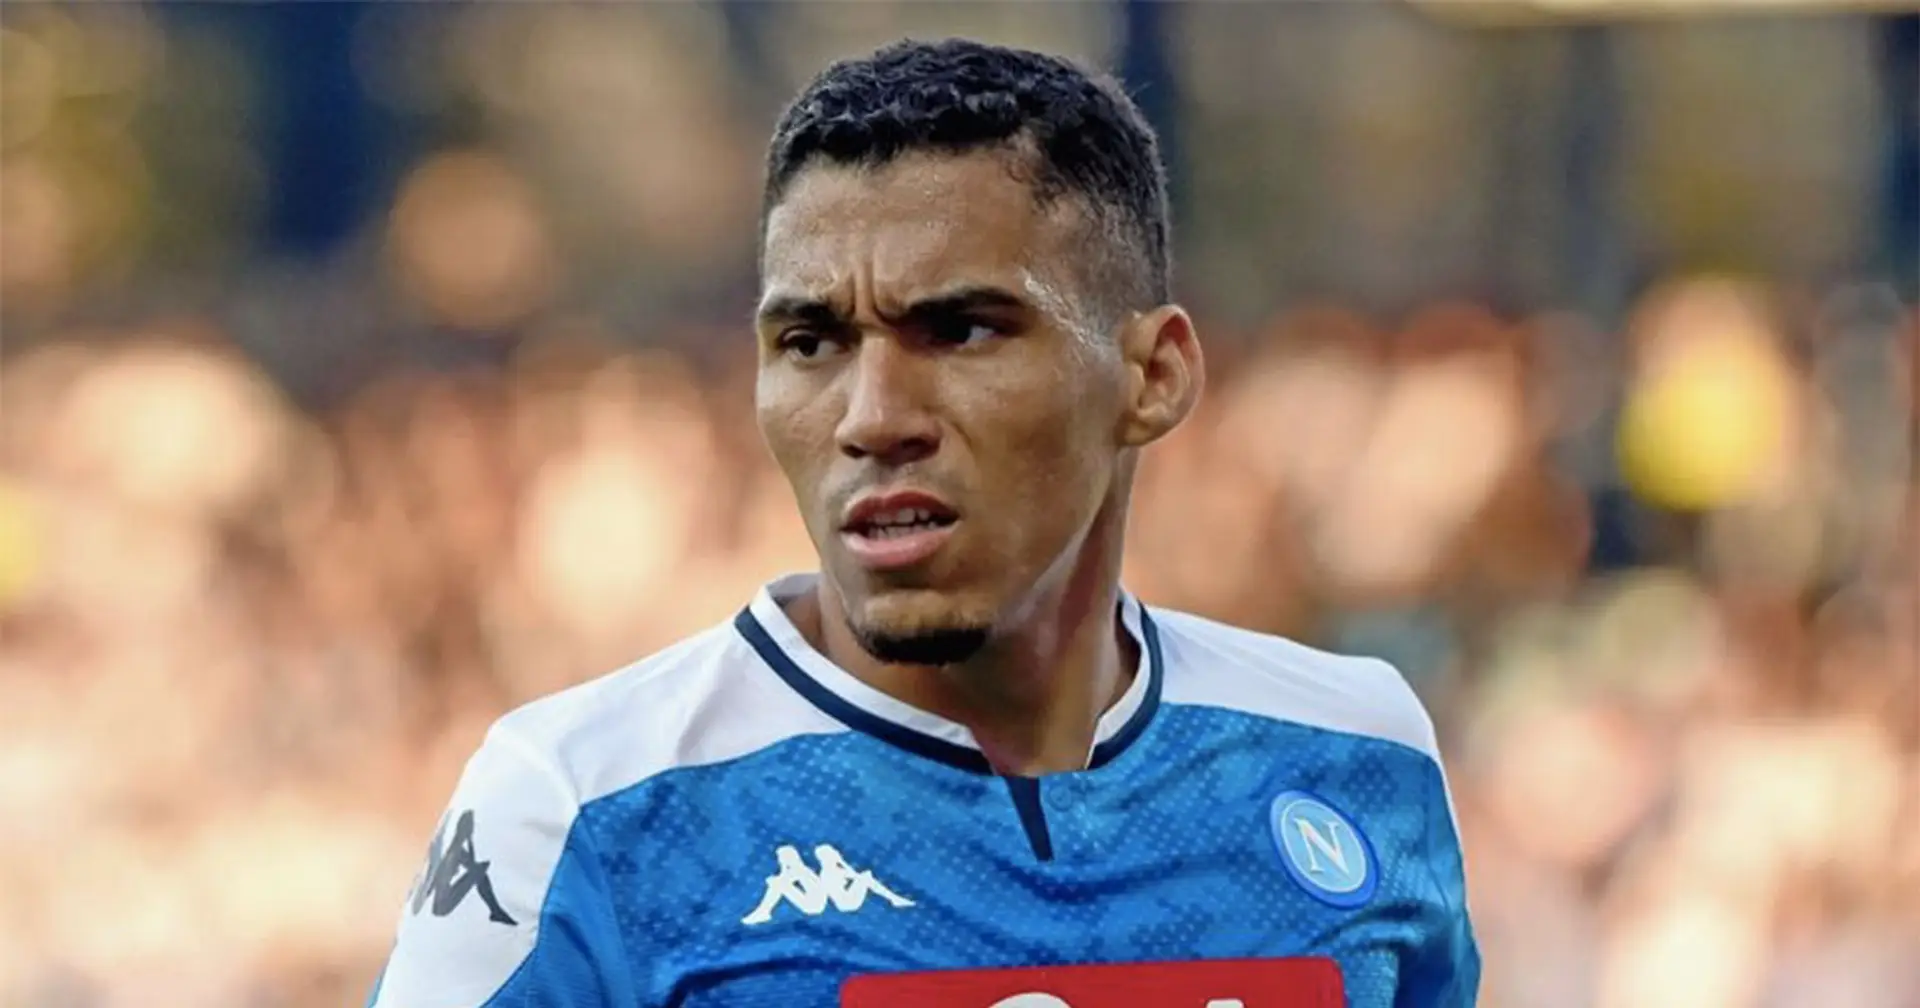 UFFICIALE | Il Napoli ha ceduto Allan all'Everton, per il brasiliano contratto fino al 2023